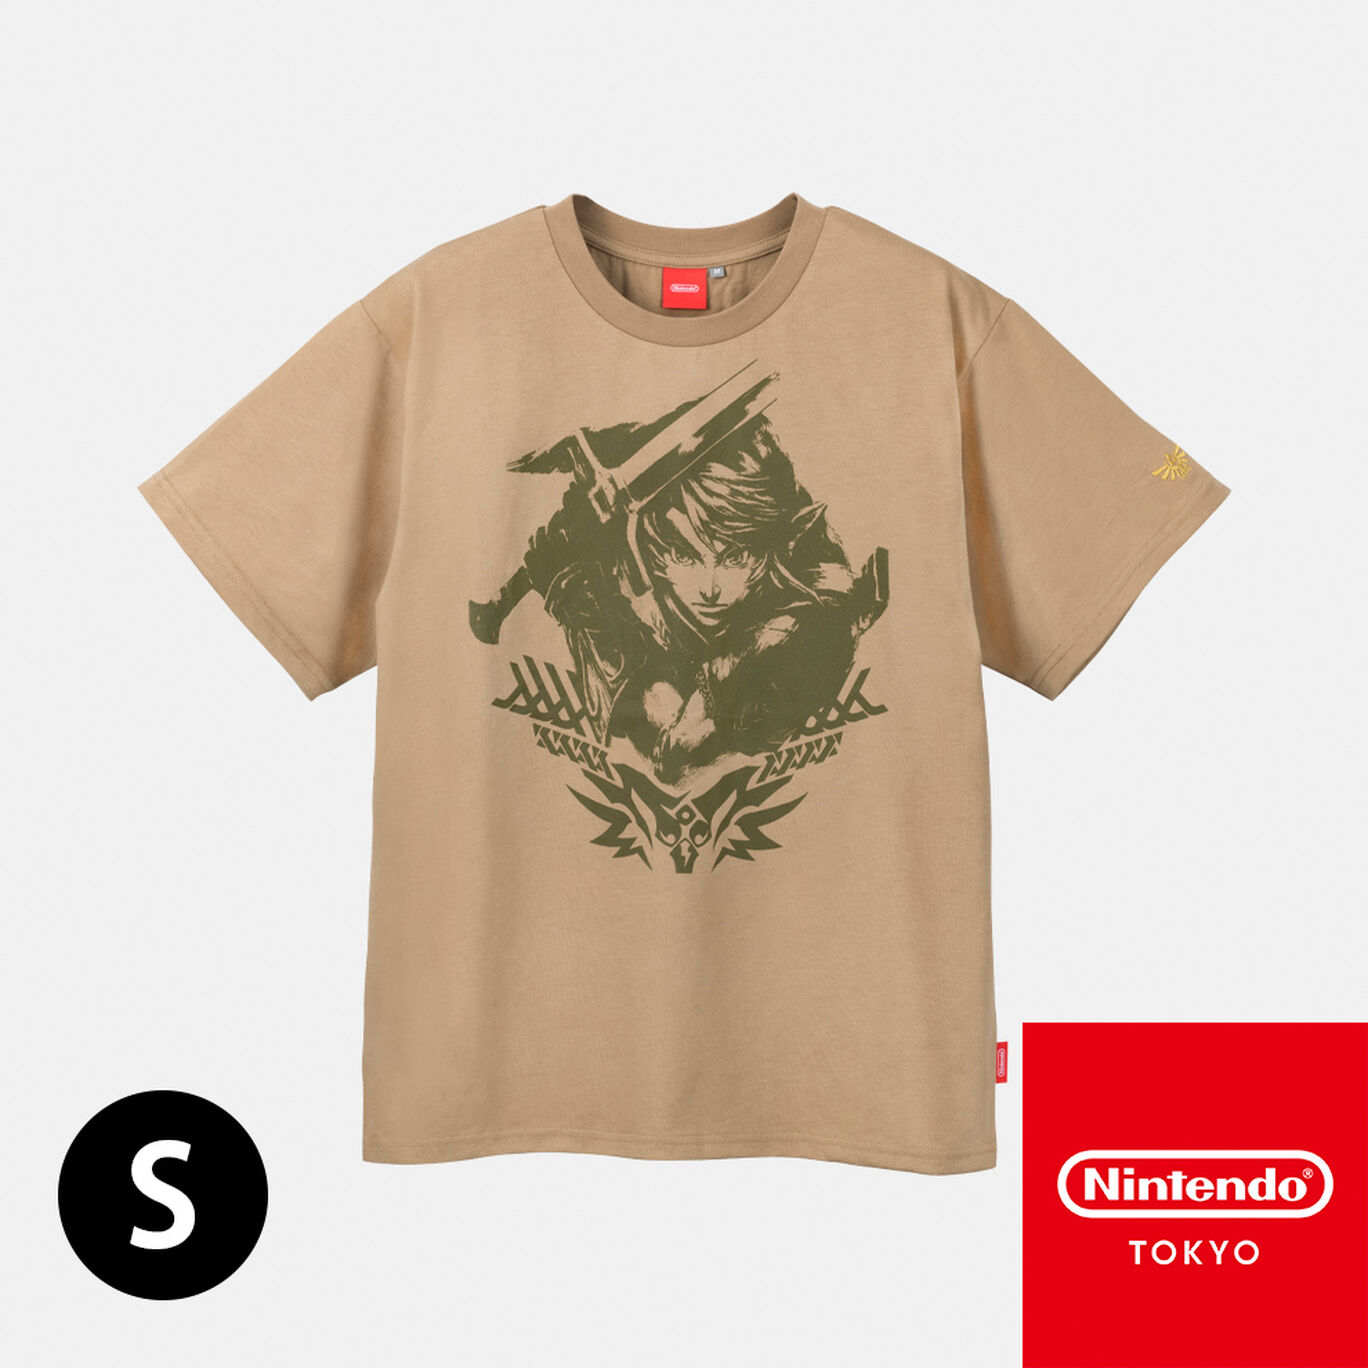 Tシャツ トライフォース リンク ゼルダの伝説【Nintendo TOKYO取り扱い商品】 | My Nintendo  Store（マイニンテンドーストア）